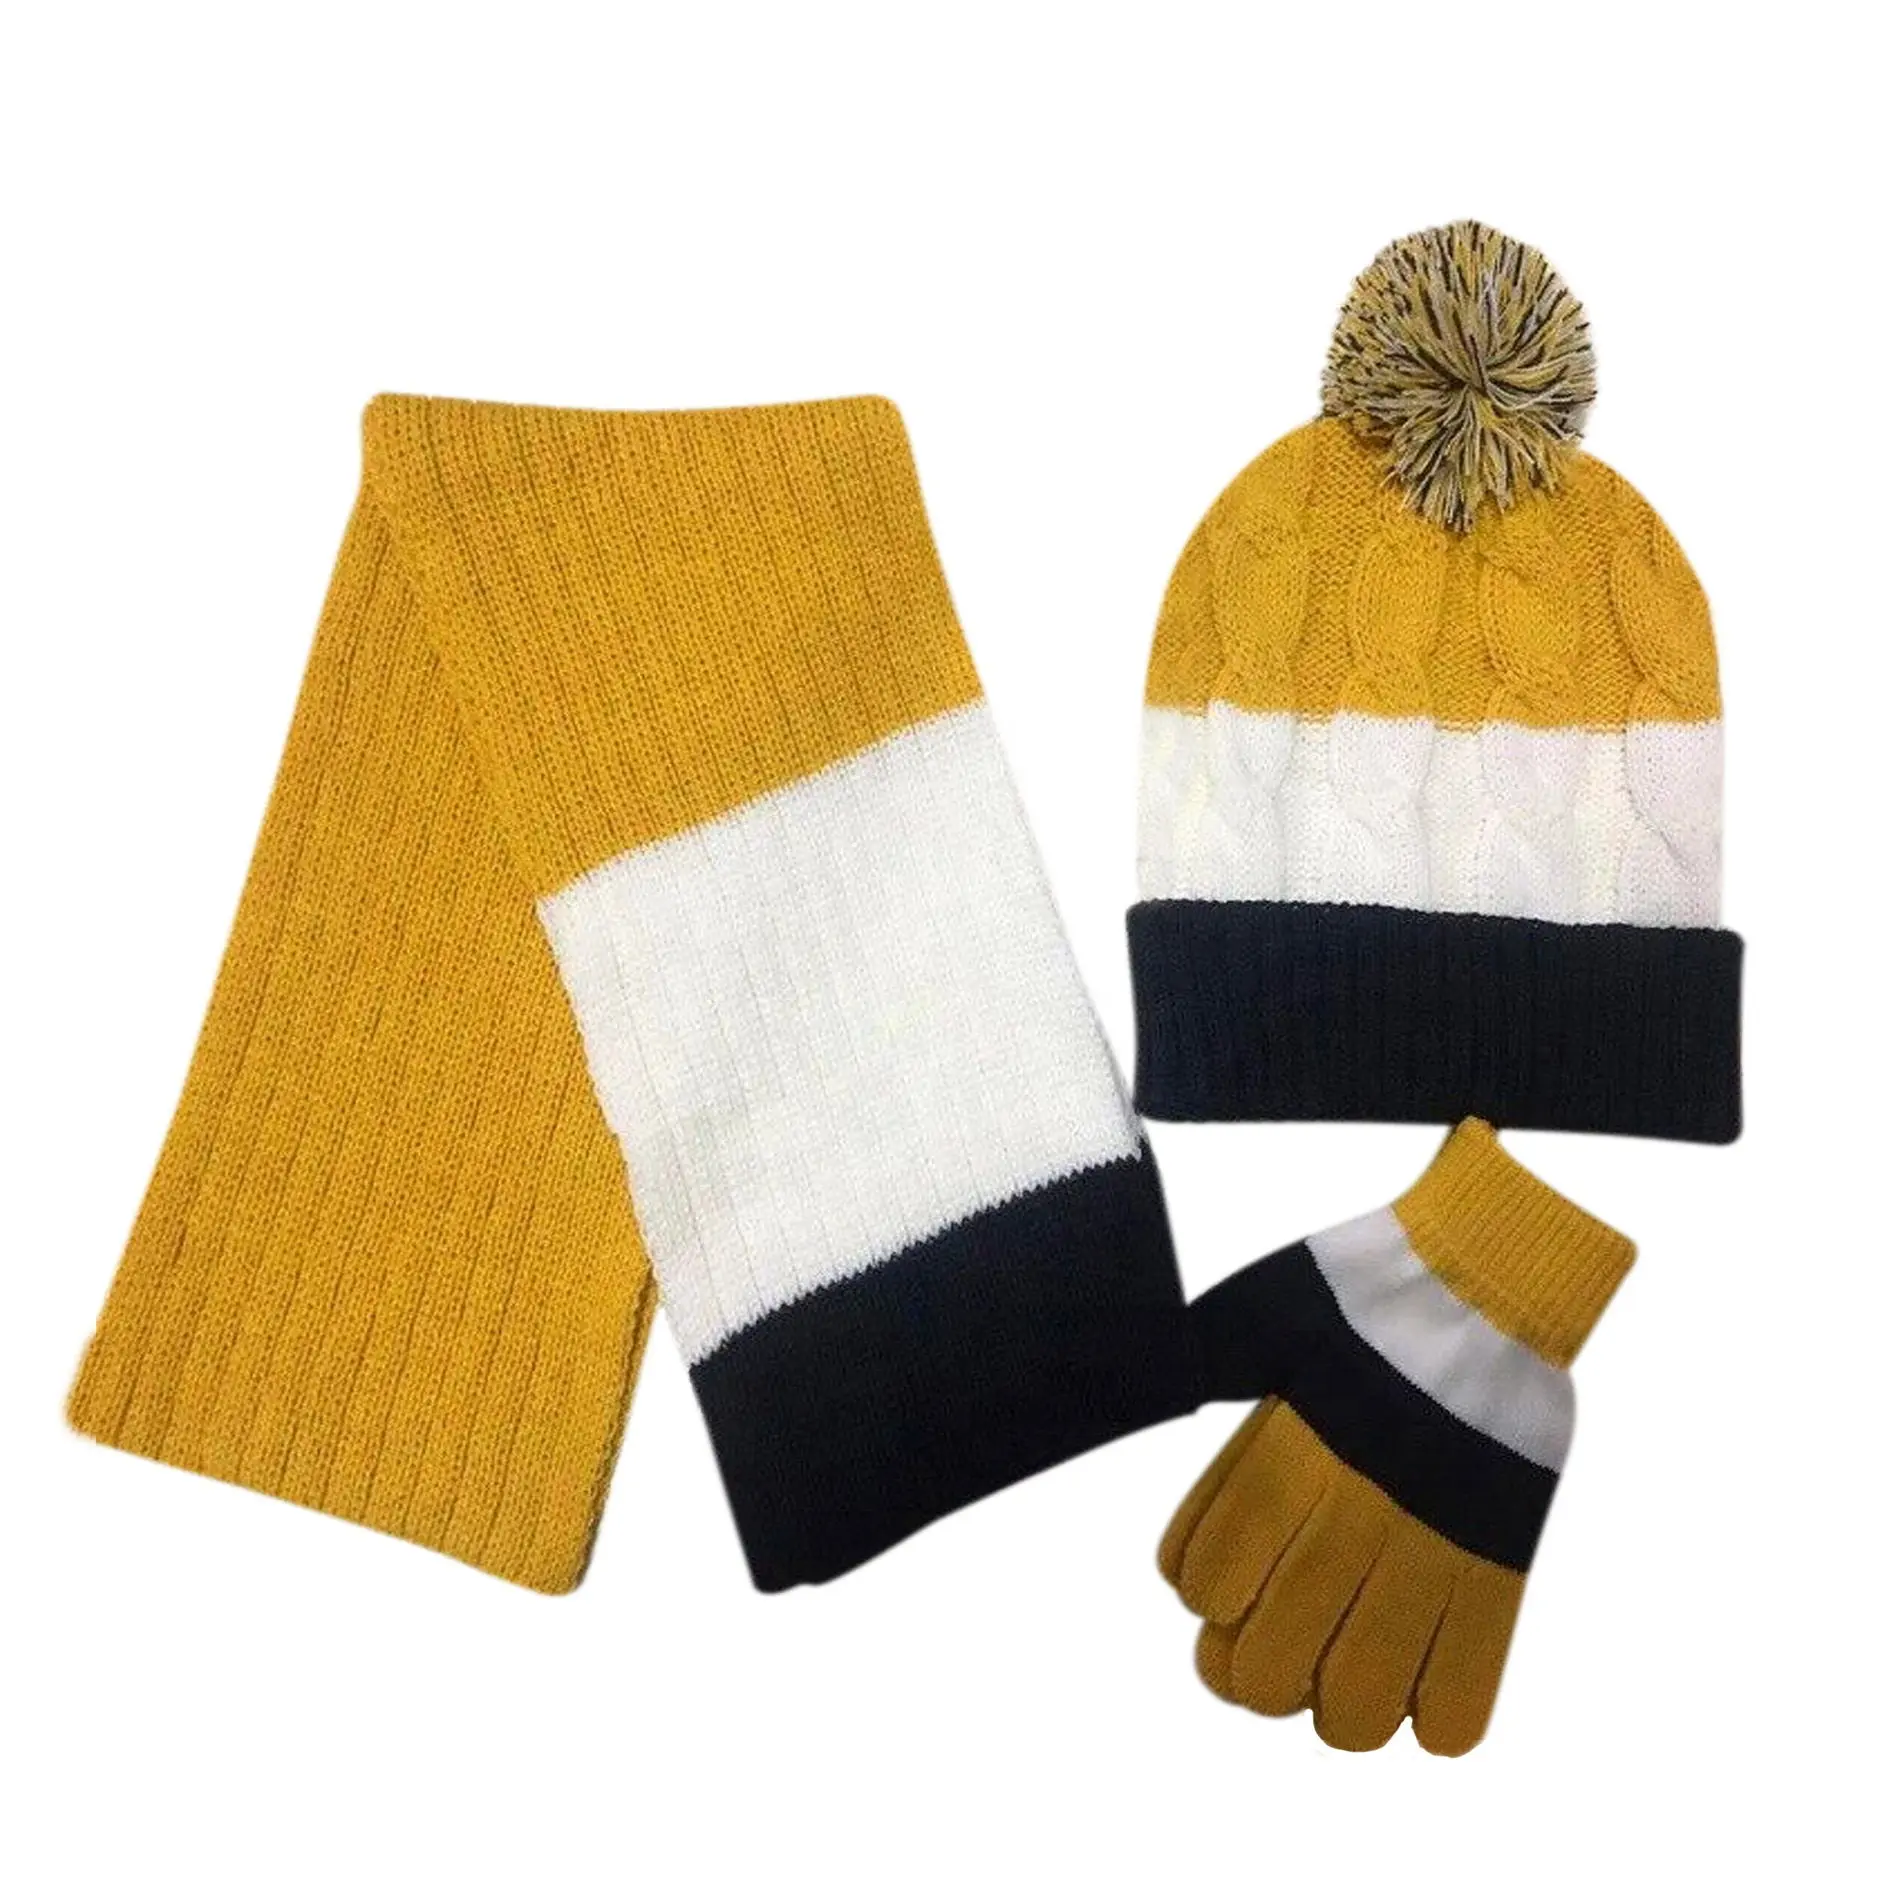 ชุดหมวกและผ้าพันคอสำหรับเด็กผู้ชายเด็กผู้หญิง,หมวกถักหมวกปอมปอมทำจากอะคริลิกสำหรับฤดูหนาว